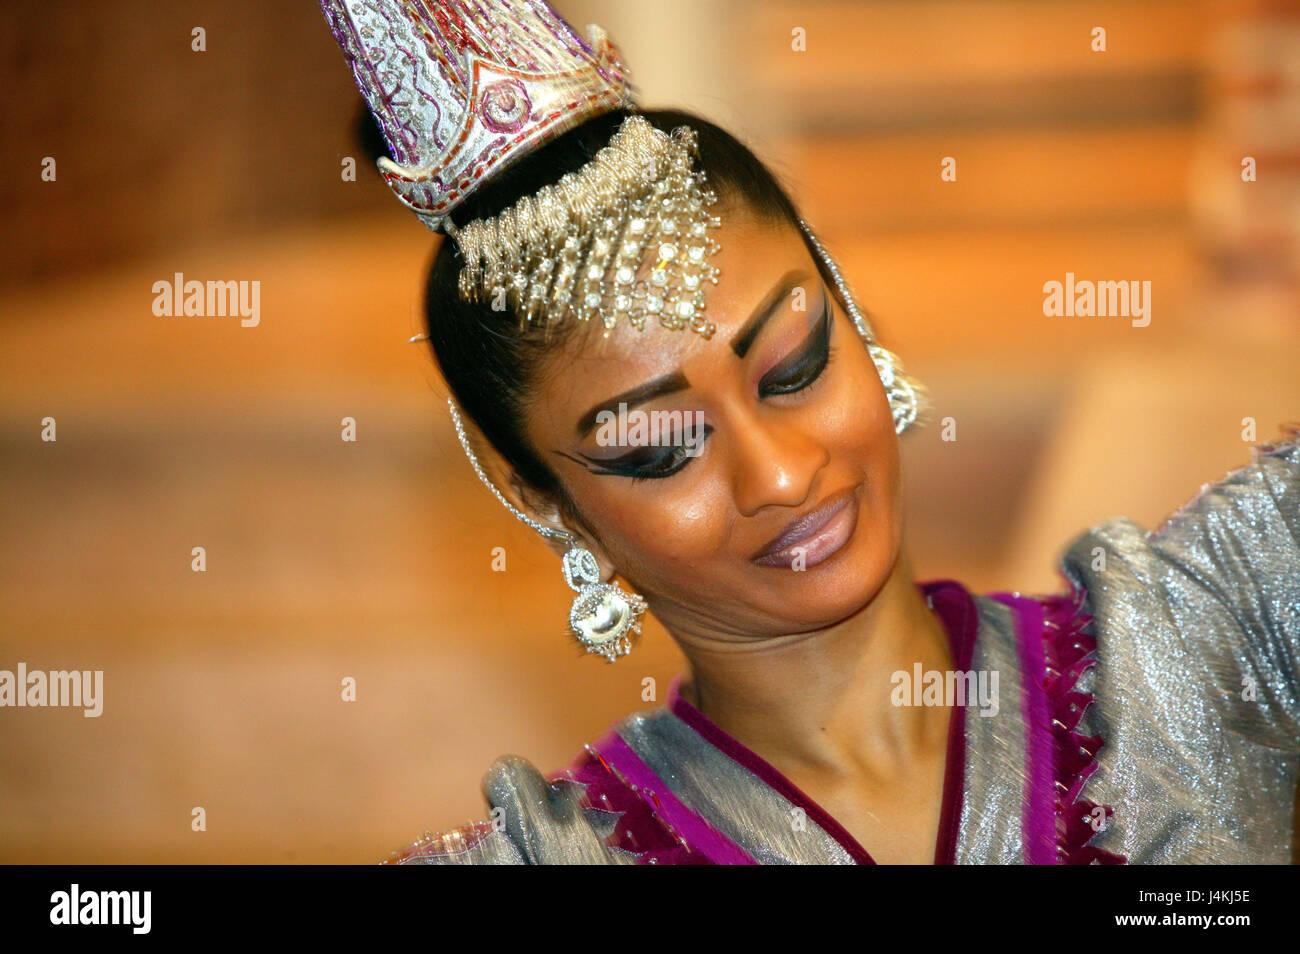 Sri Lanka, ballerino, motion, ritratto, nessun modello di rilascio Asia, Asia del Sud, ex Ceylon, la cultura, la gente del posto, donna Srilankerin, Singhalesin, giovane, sorriso, danza felicemente, amichevole, il make-up, copricapo, gioielli, costume nazionale, vestiti, costume, srilankisch, tradizionalmente, folklore, tradizione, danza, all'interno Foto Stock